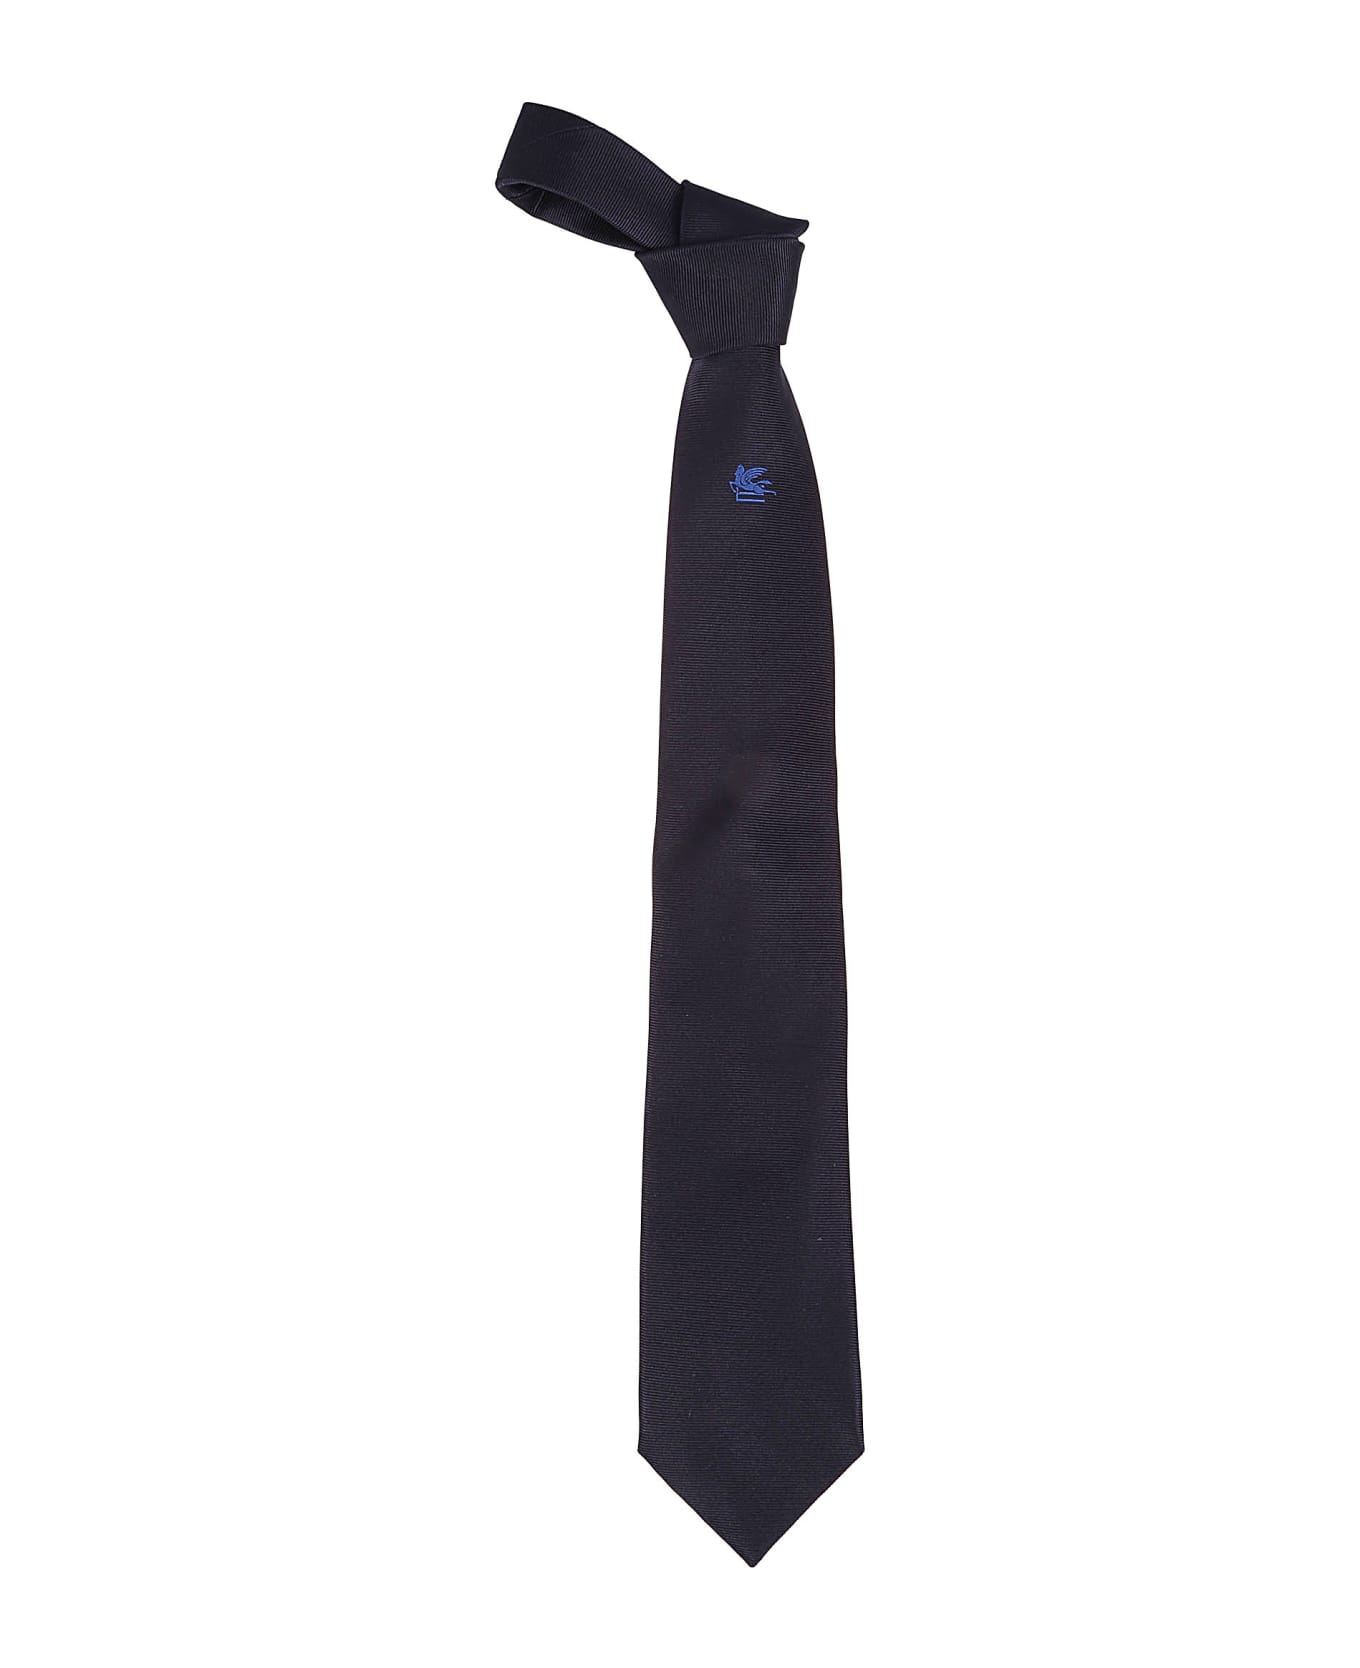 Etro Placed Tie - Blu Navy ネクタイ